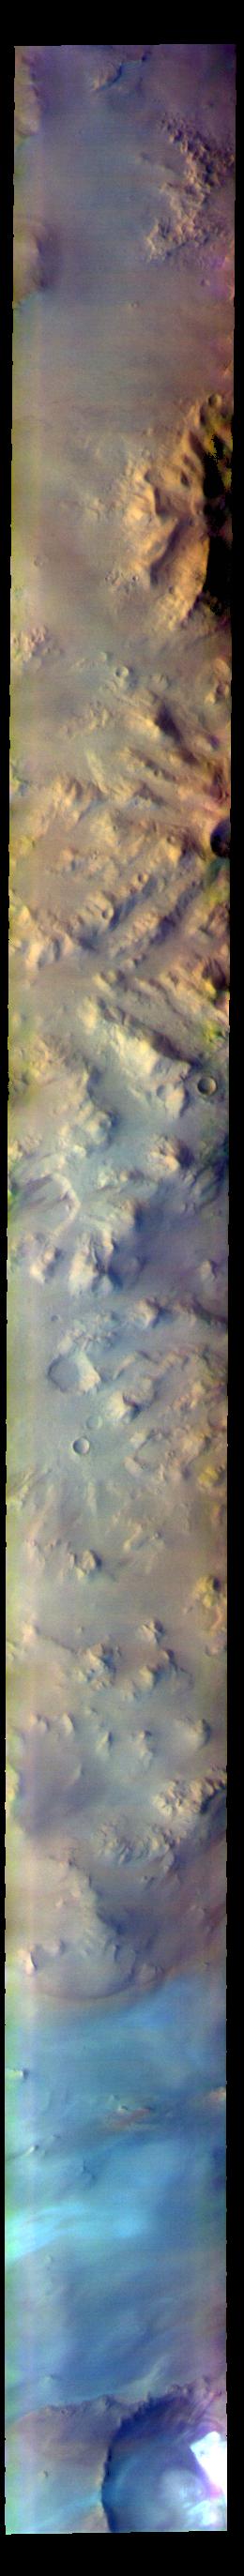 PIA25008: Australe Montes - False Color